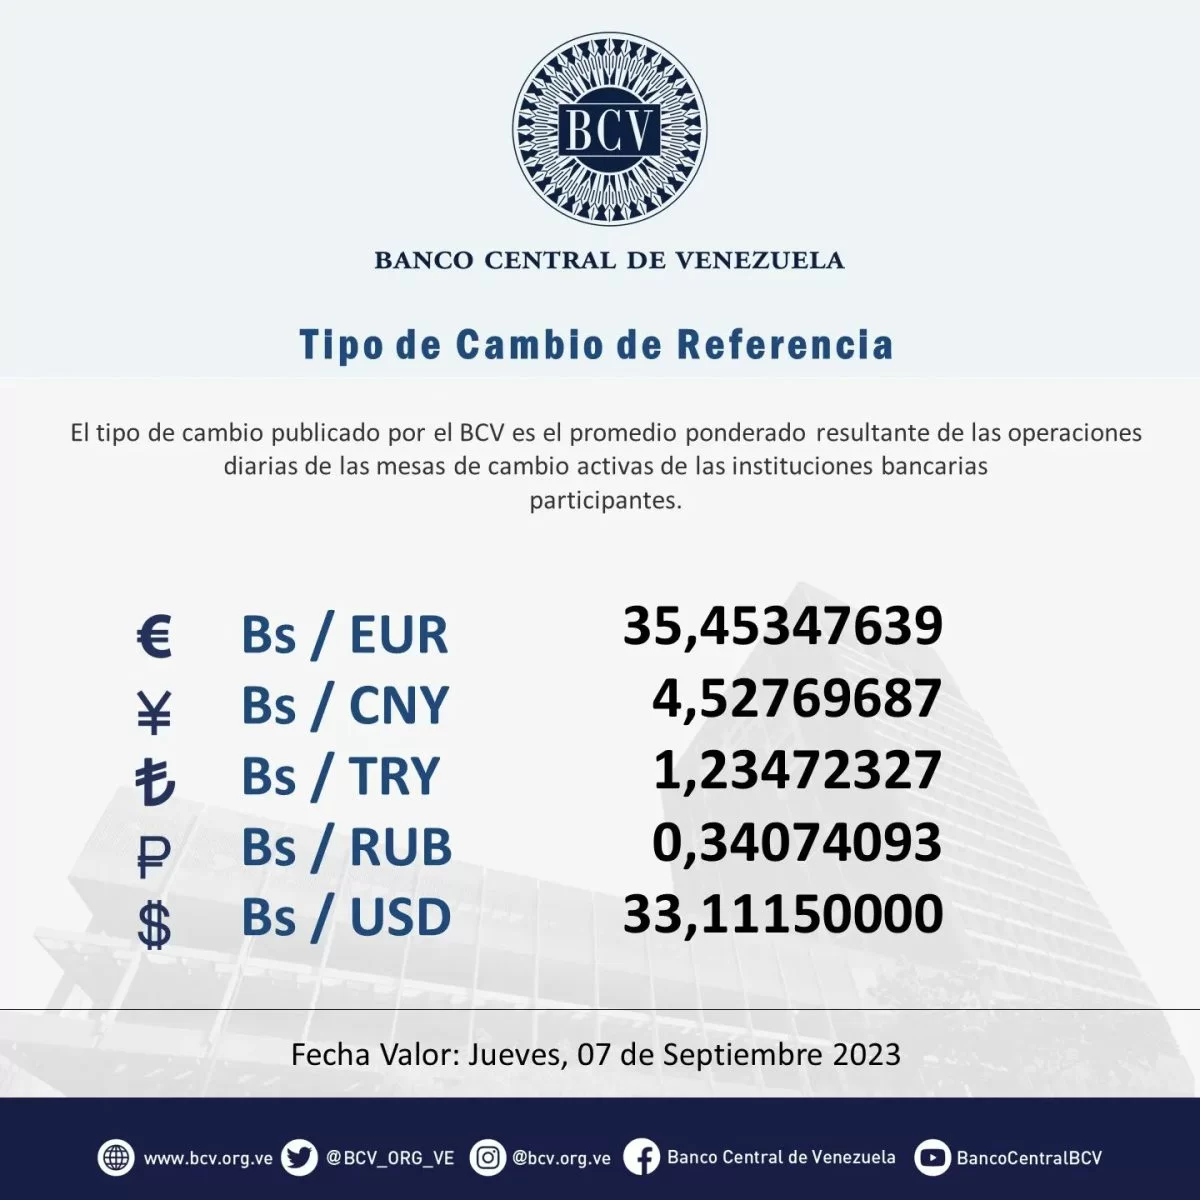 dolartoday en venezuela precio del dolar este miercoles 6 de septiembre de 2023 laverdaddemonagas.com bcv57